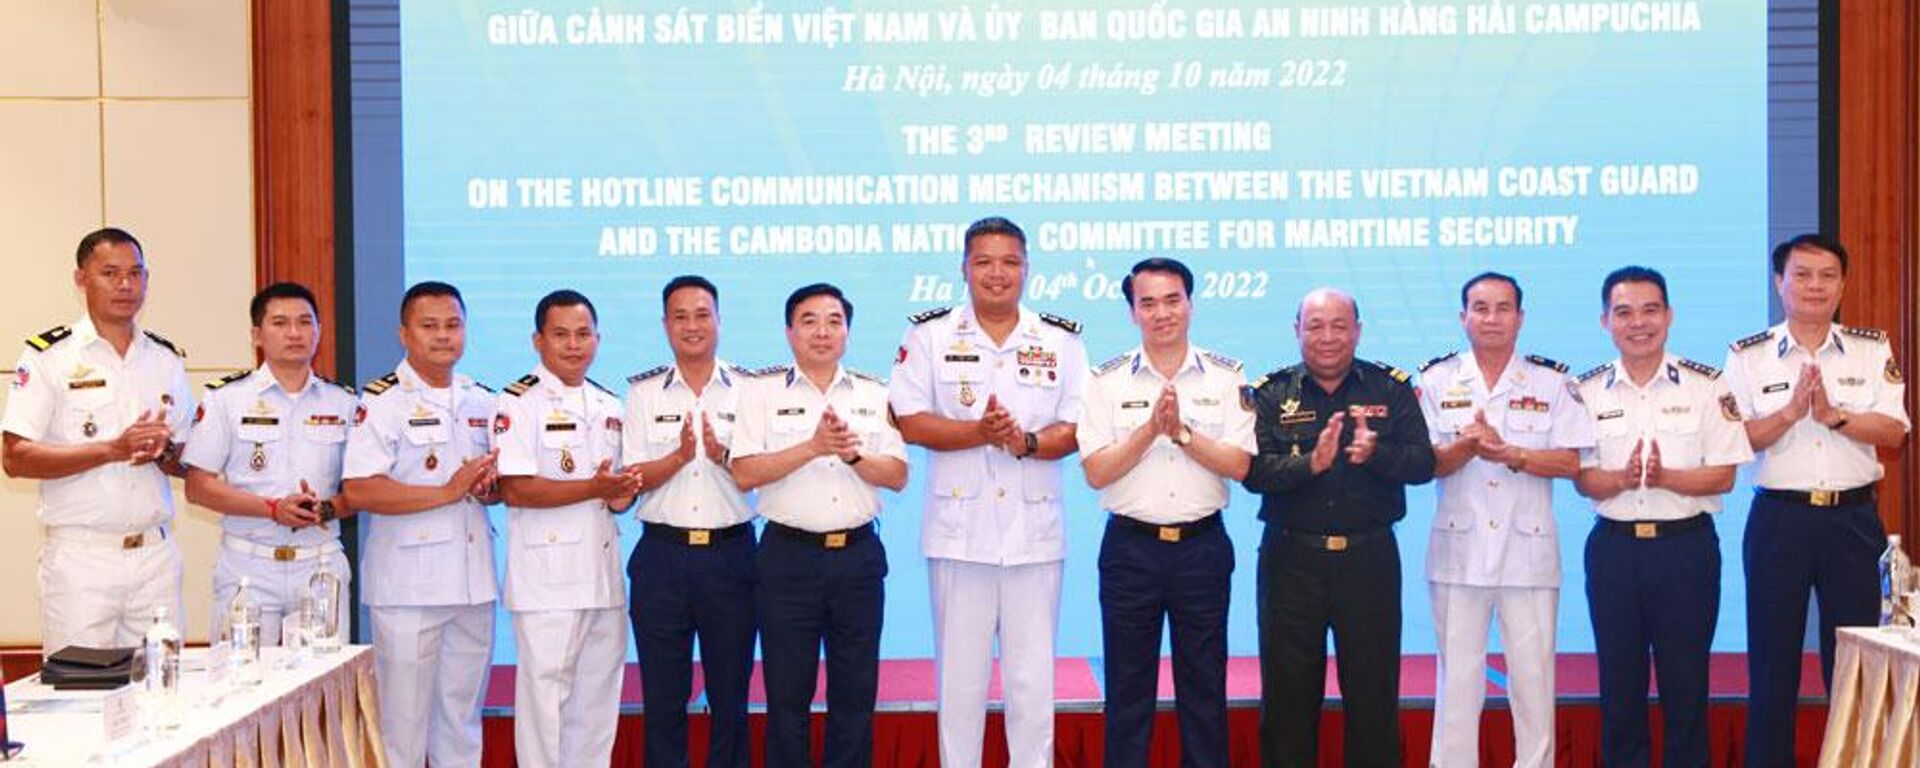 Tiếp tục tăng cường trao đổi thông tin giữa Cảnh sát biển Việt Nam và Ủy ban Quốc gia An ninh hàng hải Campuchia - Sputnik Việt Nam, 1920, 04.10.2022